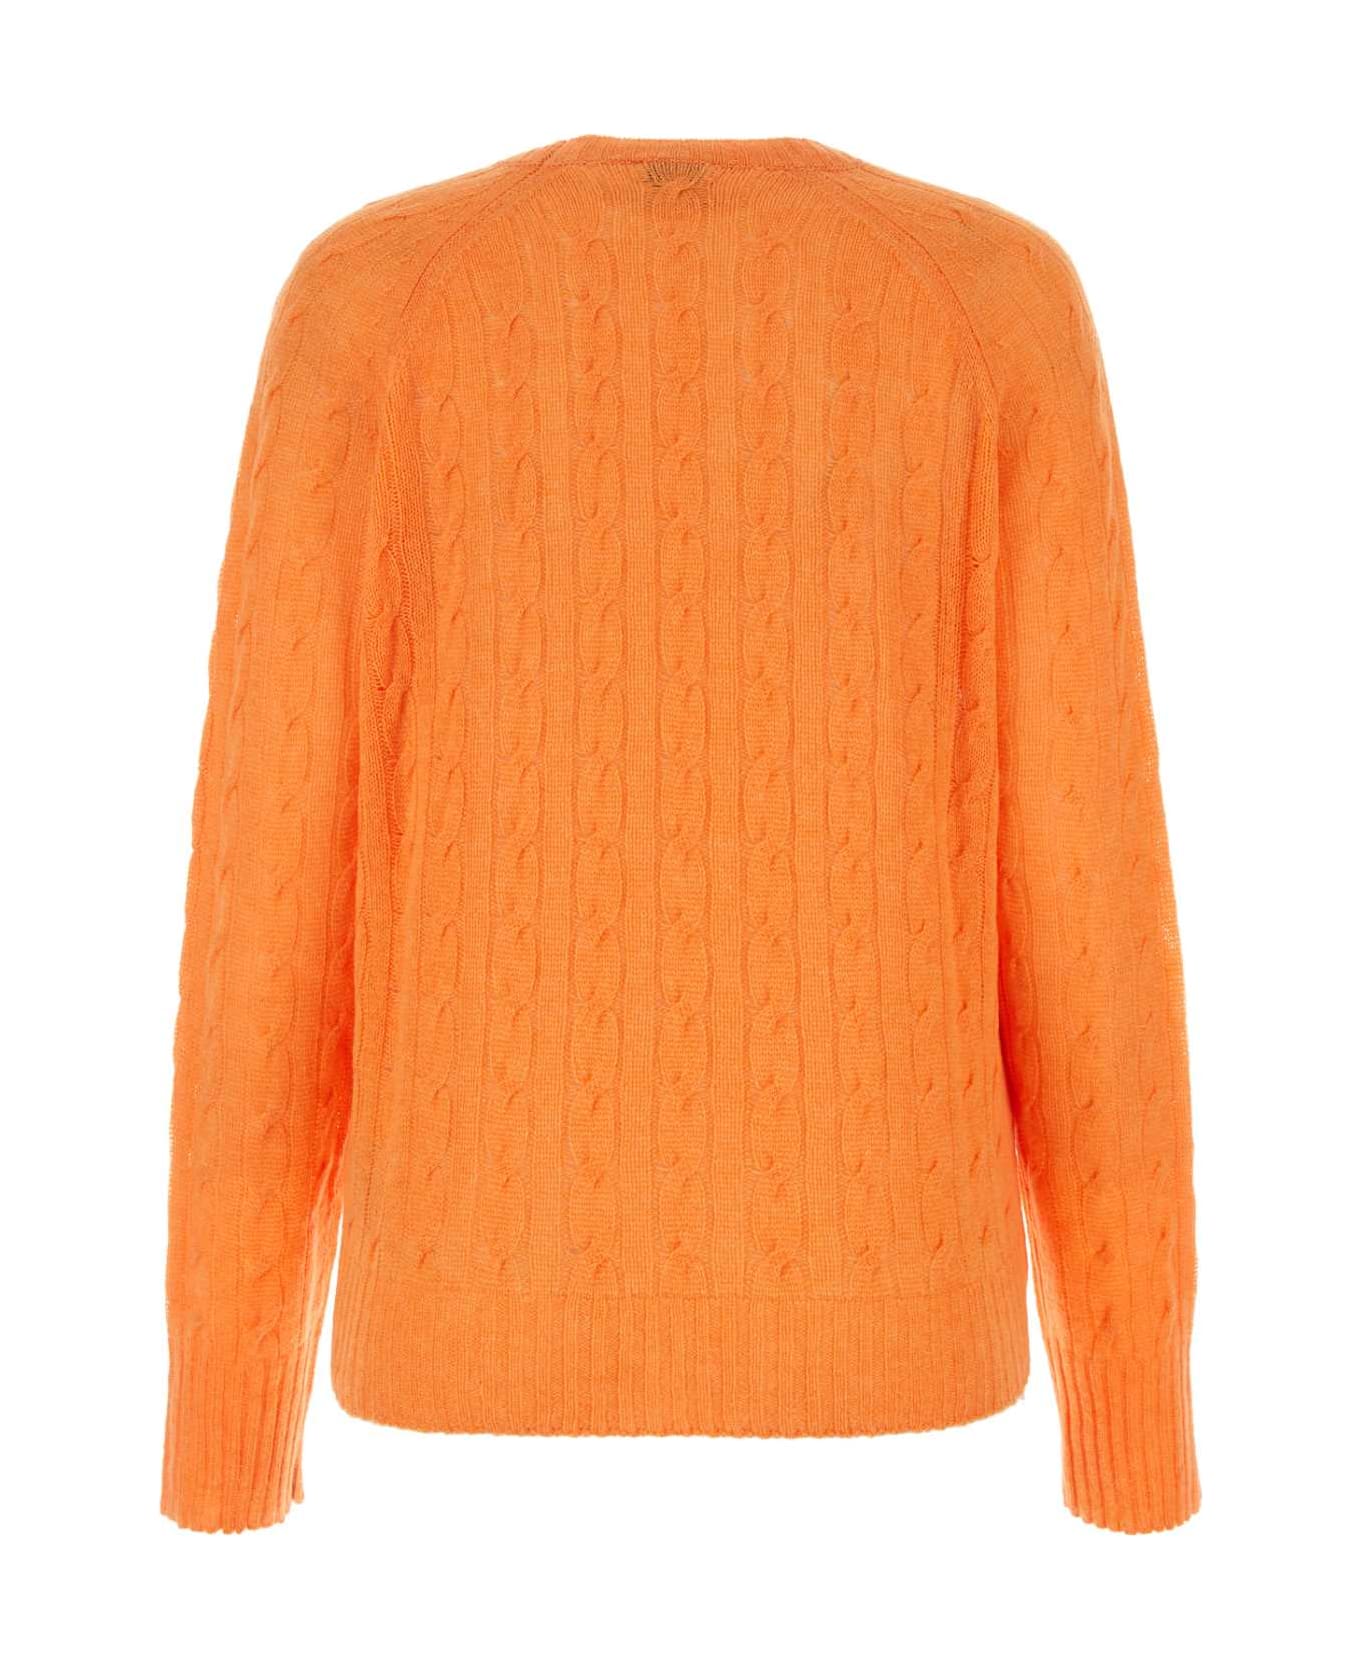 Etro Orange Cashmere Sweater - Orange フリース